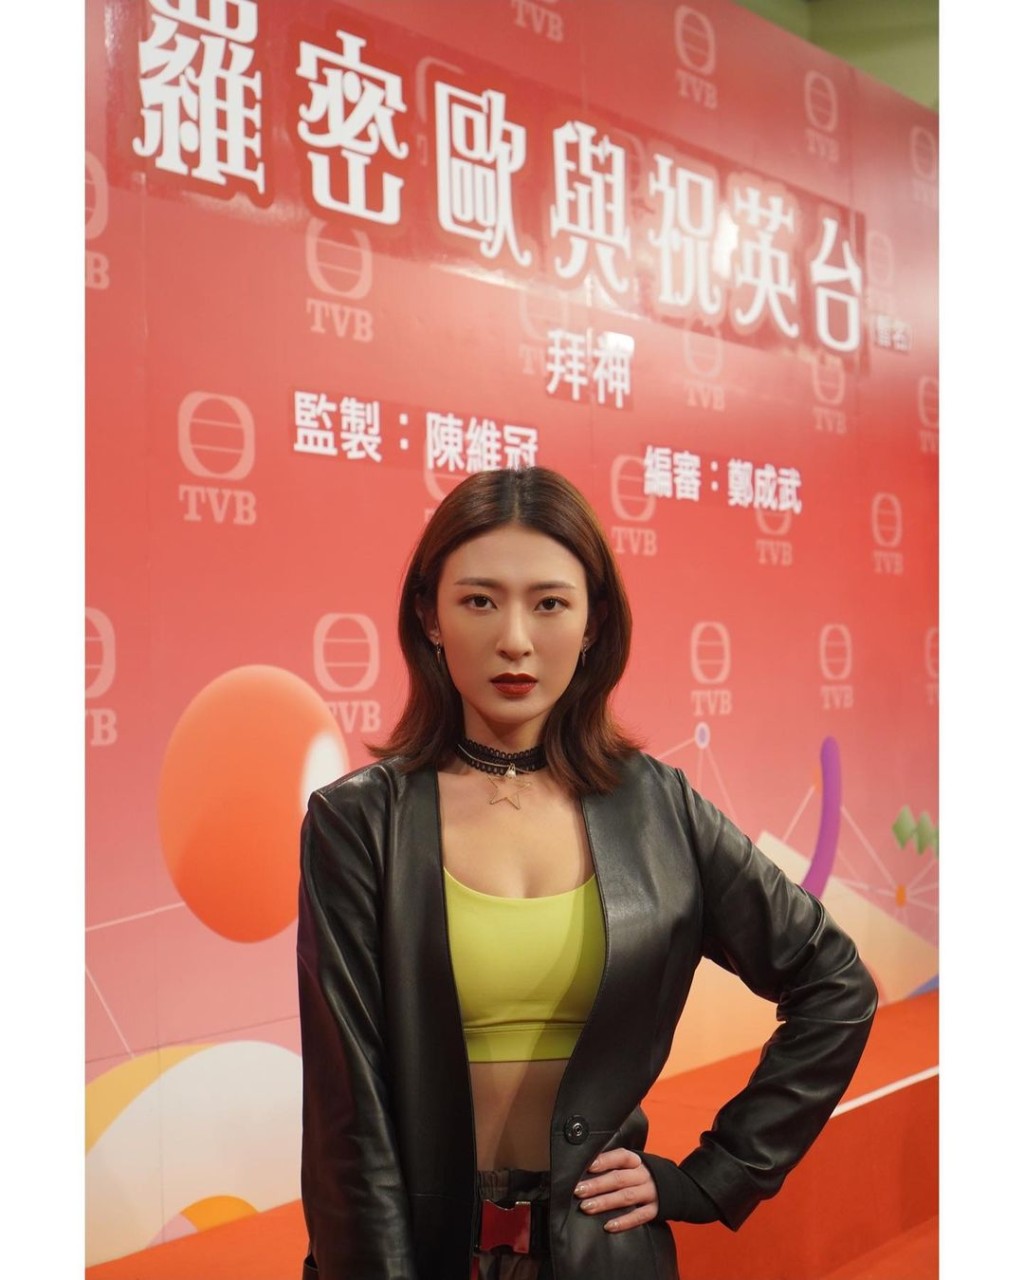 李君妍2009年畢業於第24期無綫電視藝員訓練班，直到2011年因TVB招募武打演員，她曾接觸過南拳，獲機會參與武術選秀節目《功夫新星》。李君妍熱愛運動身材一直相當fit，自從參演《心理追兇 Mind Hunter》後開始為人所知，2018年更獲TVB轉簽經理人合約，其後參演過《她她她的少女時代》飾演健身室教練Icy更獲網民大讚！